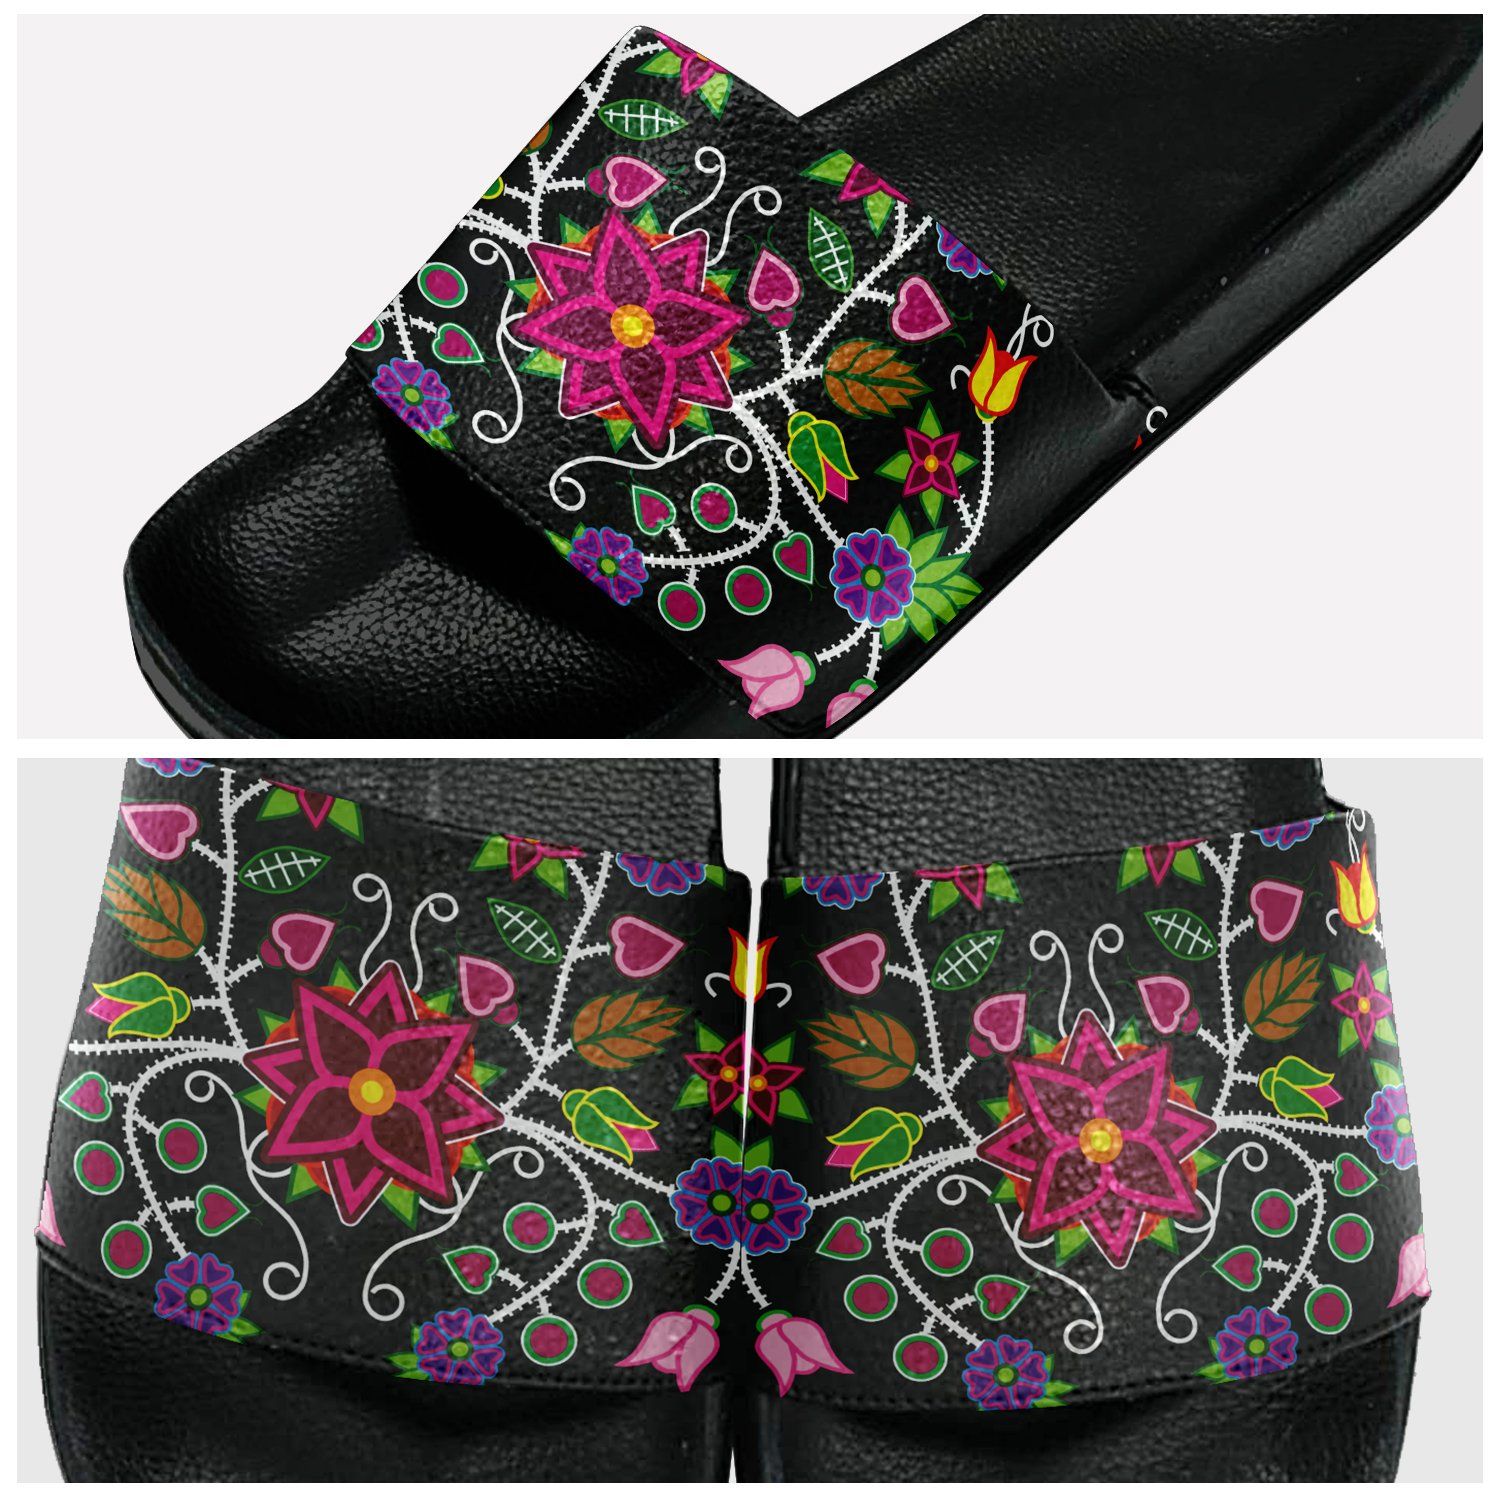 Floral Beadwork Slide Sandals 49 Dzine 